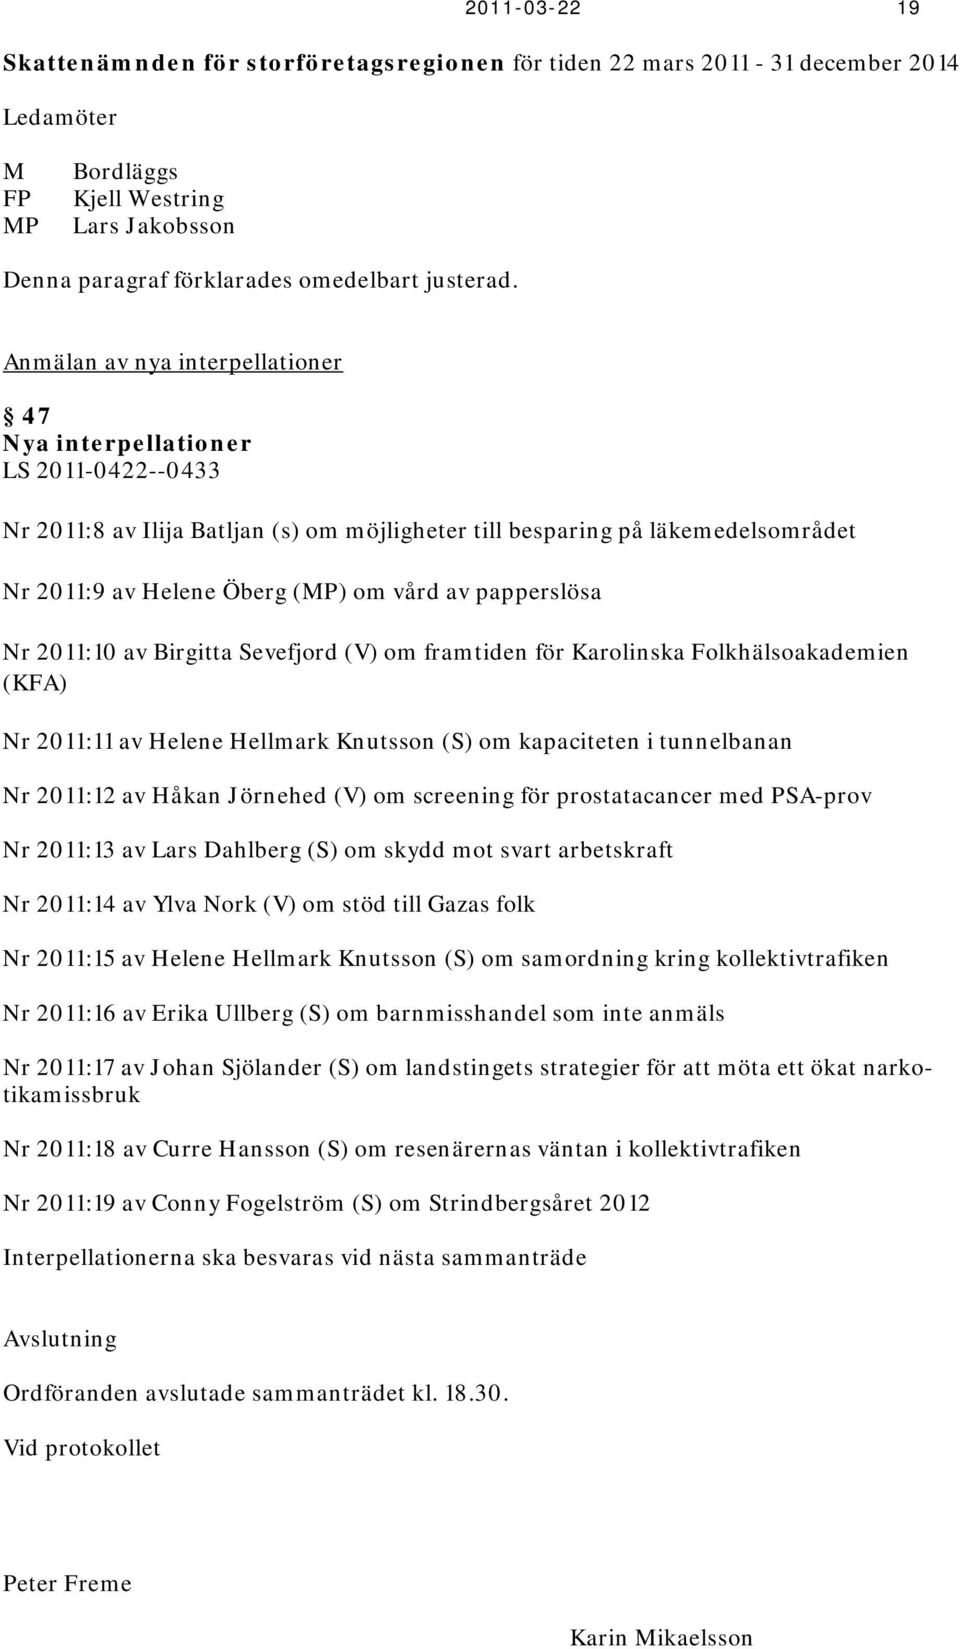 papperslösa Nr 2011:10 av Birgitta Sevefjord (V) om framtiden för Karolinska Folkhälsoakademien (KFA) Nr 2011:11 av Helene Hellmark Knutsson (S) om kapaciteten i tunnelbanan Nr 2011:12 av Håkan